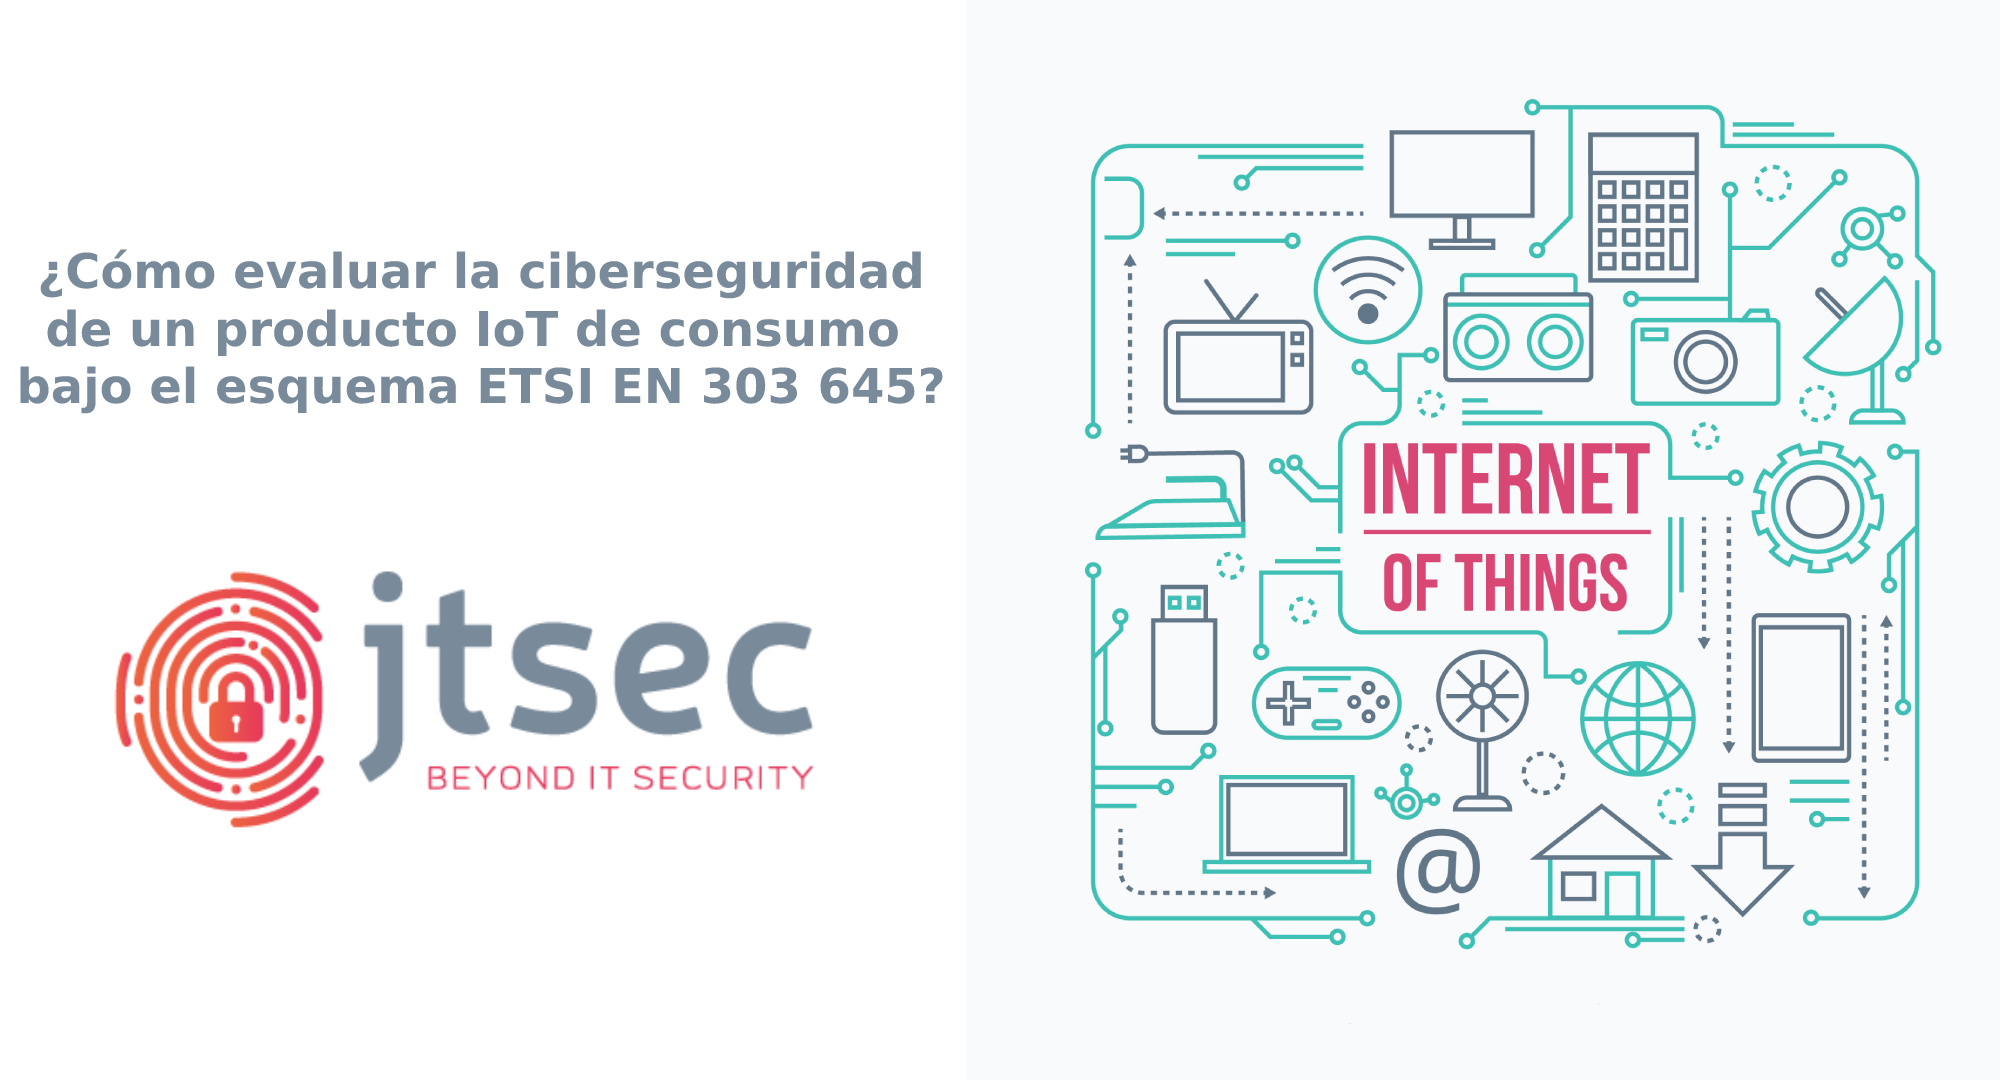 ¿Cómo evaluar la ciberseguridad de un dispositivo IoT de consumo según el esquema ETSI EN 303 645?